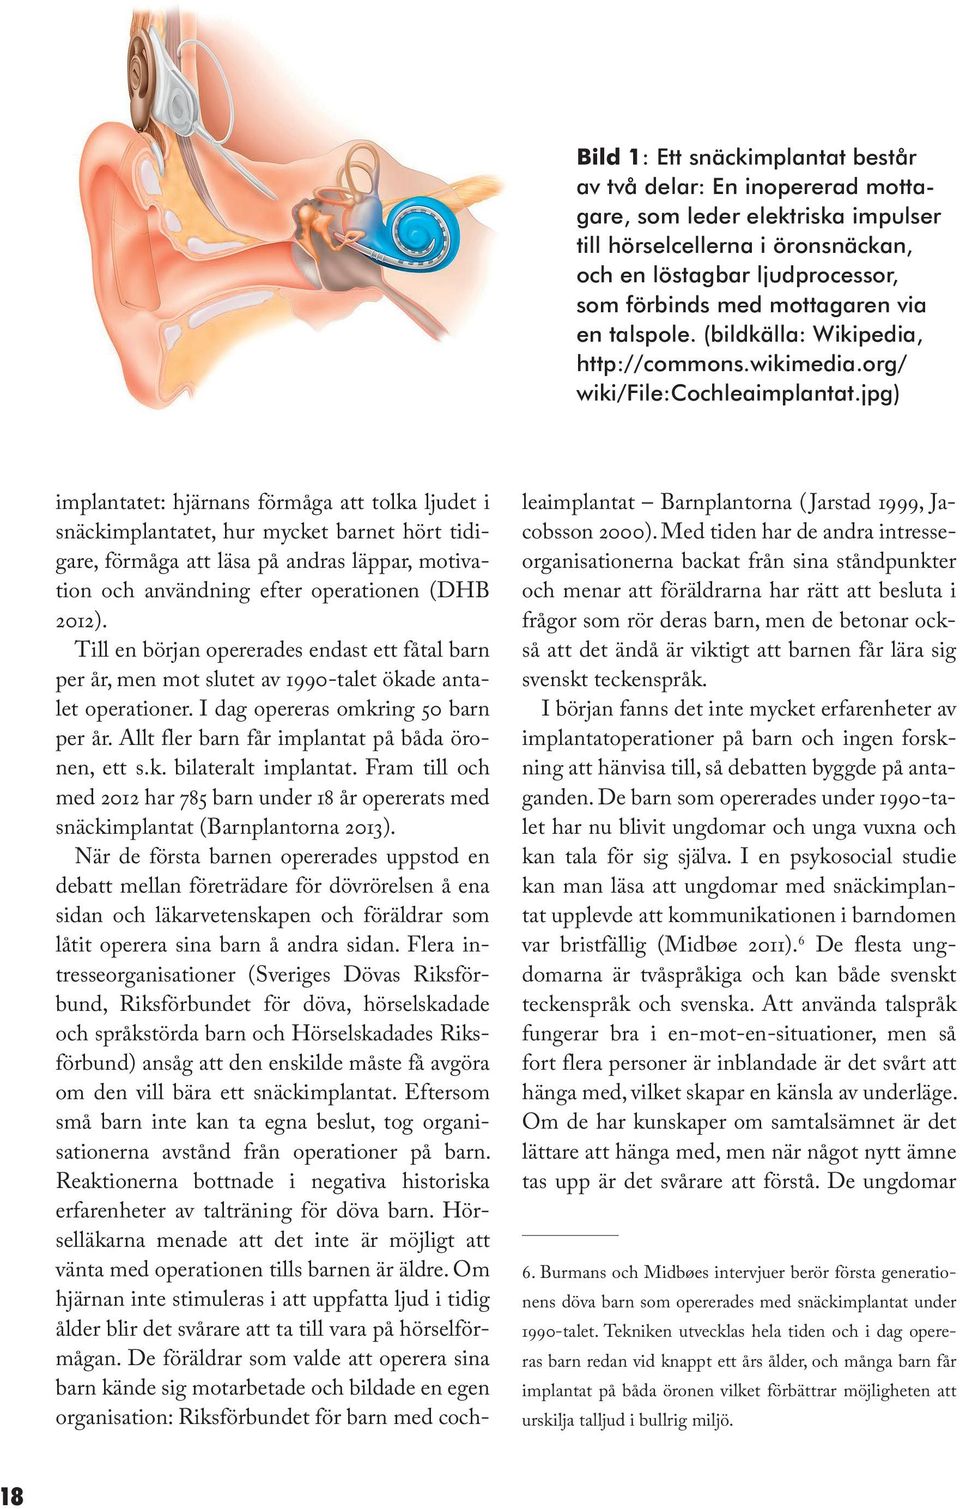 jpg) implantatet: hjärnans förmåga att tolka ljudet i snäckimplantatet, hur mycket barnet hört tidigare, förmåga att läsa på andras läppar, motivation och användning efter operationen (DHB 2012).